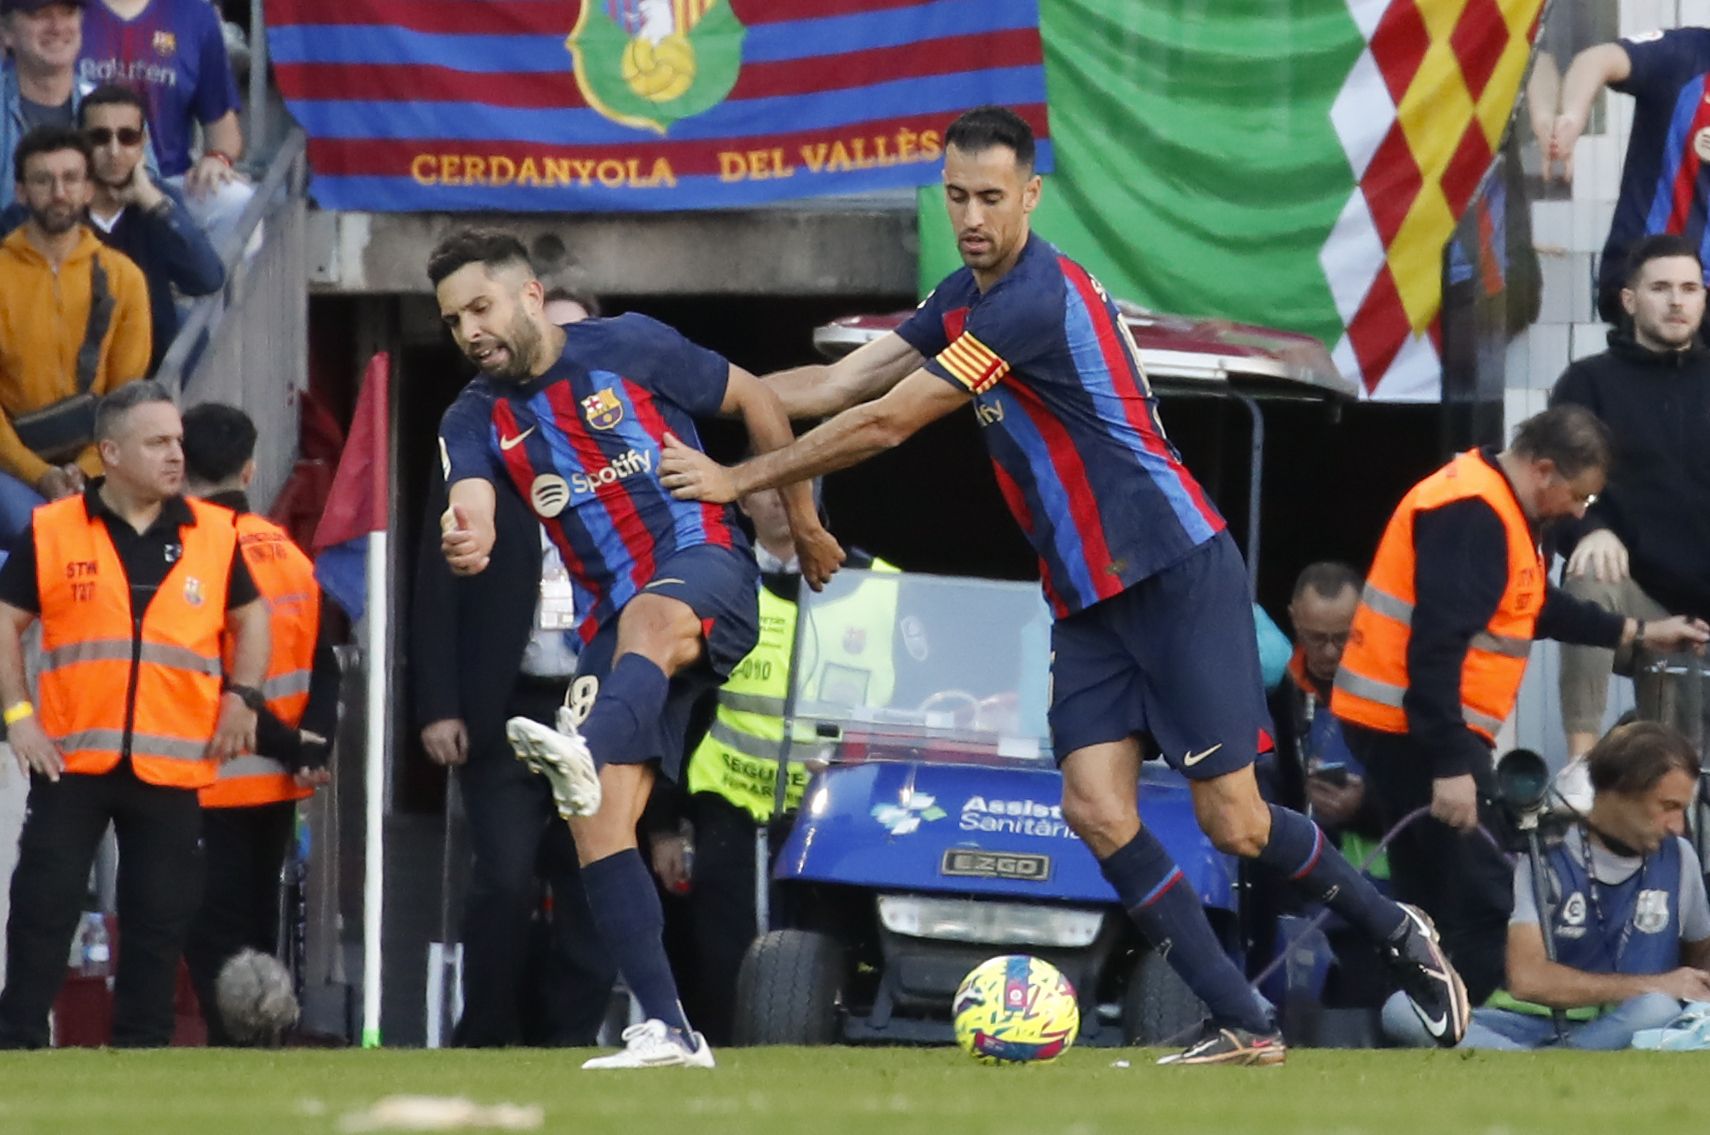 Les millors imatges del Barça - Espanyol